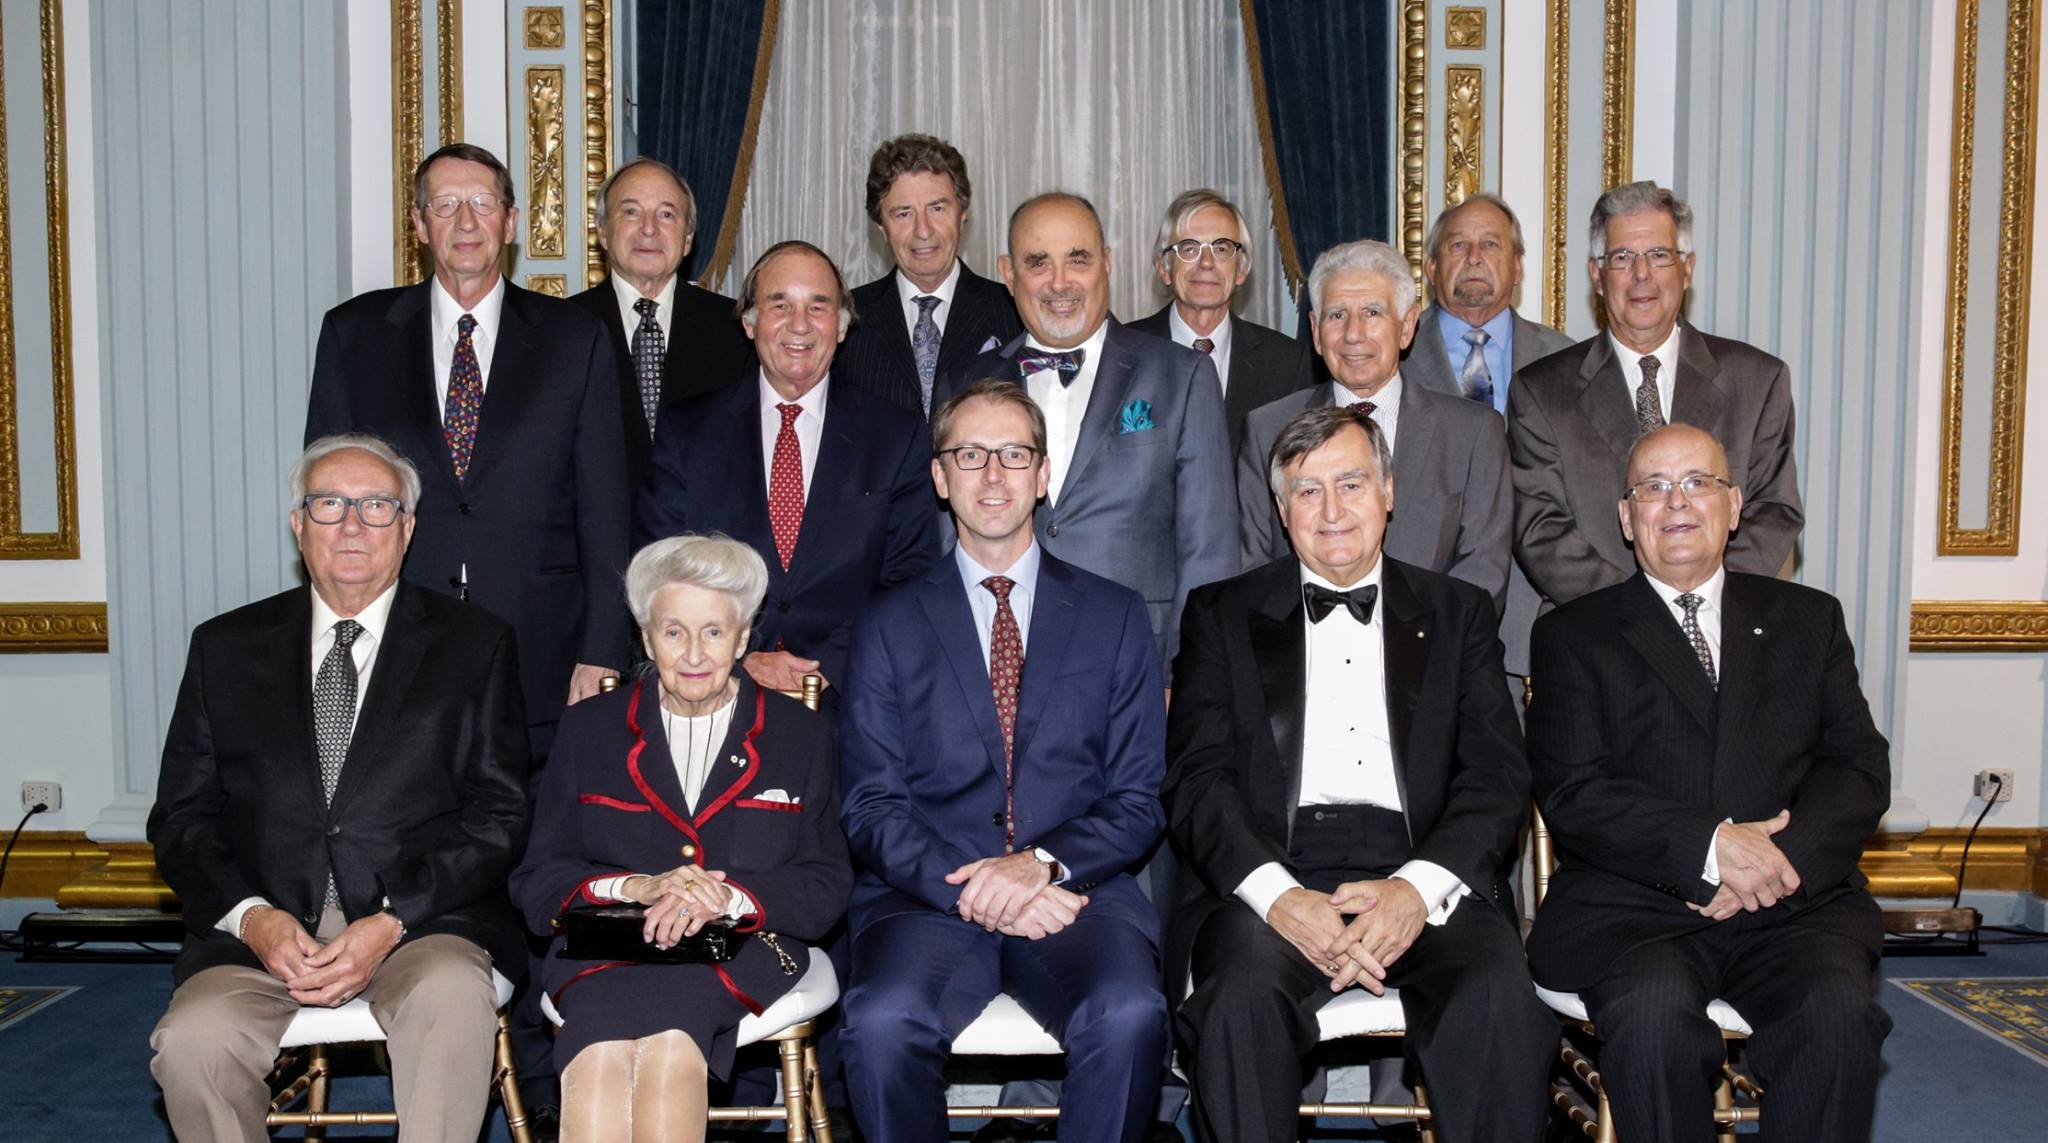 Voici la photo des avocats qui célèbrent leur 50e ou 60e anniversaire d’admission au Barreau de Montréal